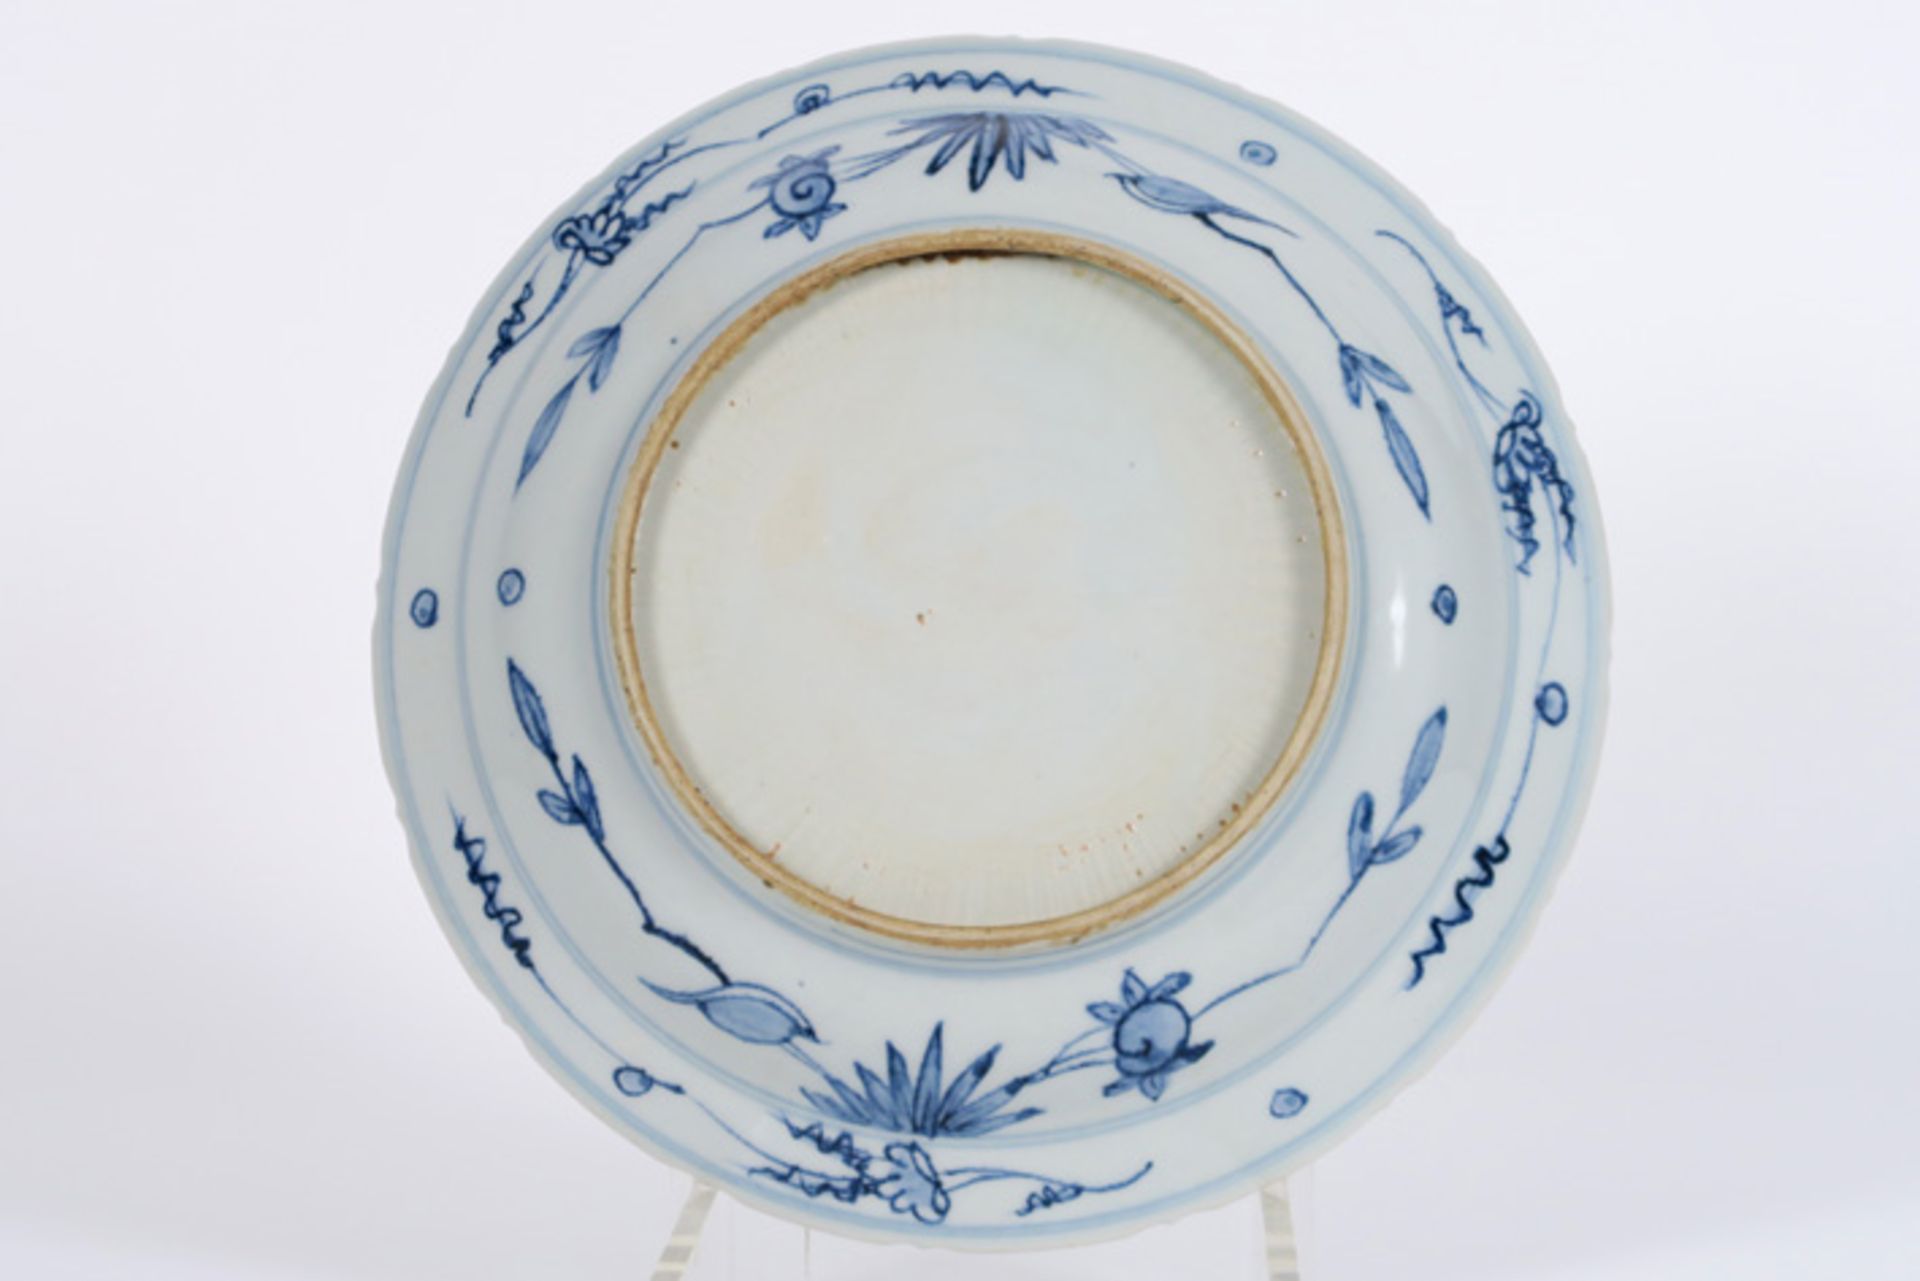 Chinese schaal in porselein met een blauwwit decor met eend aan vijver - diameter : [...] - Bild 2 aus 2